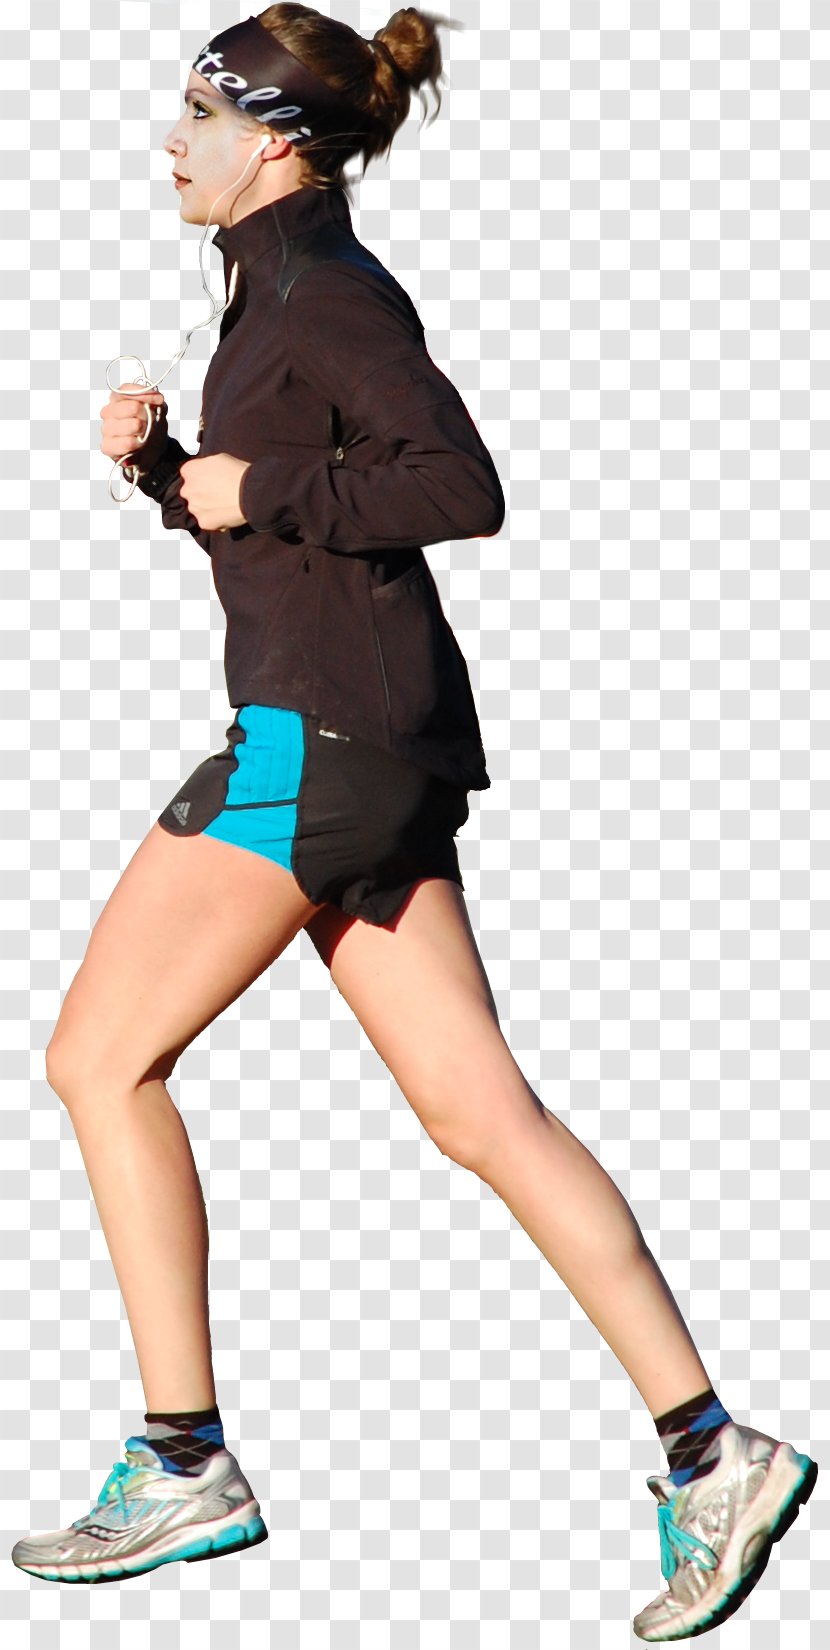 Woman Running - Cartoon - Jogging Transparent PNG